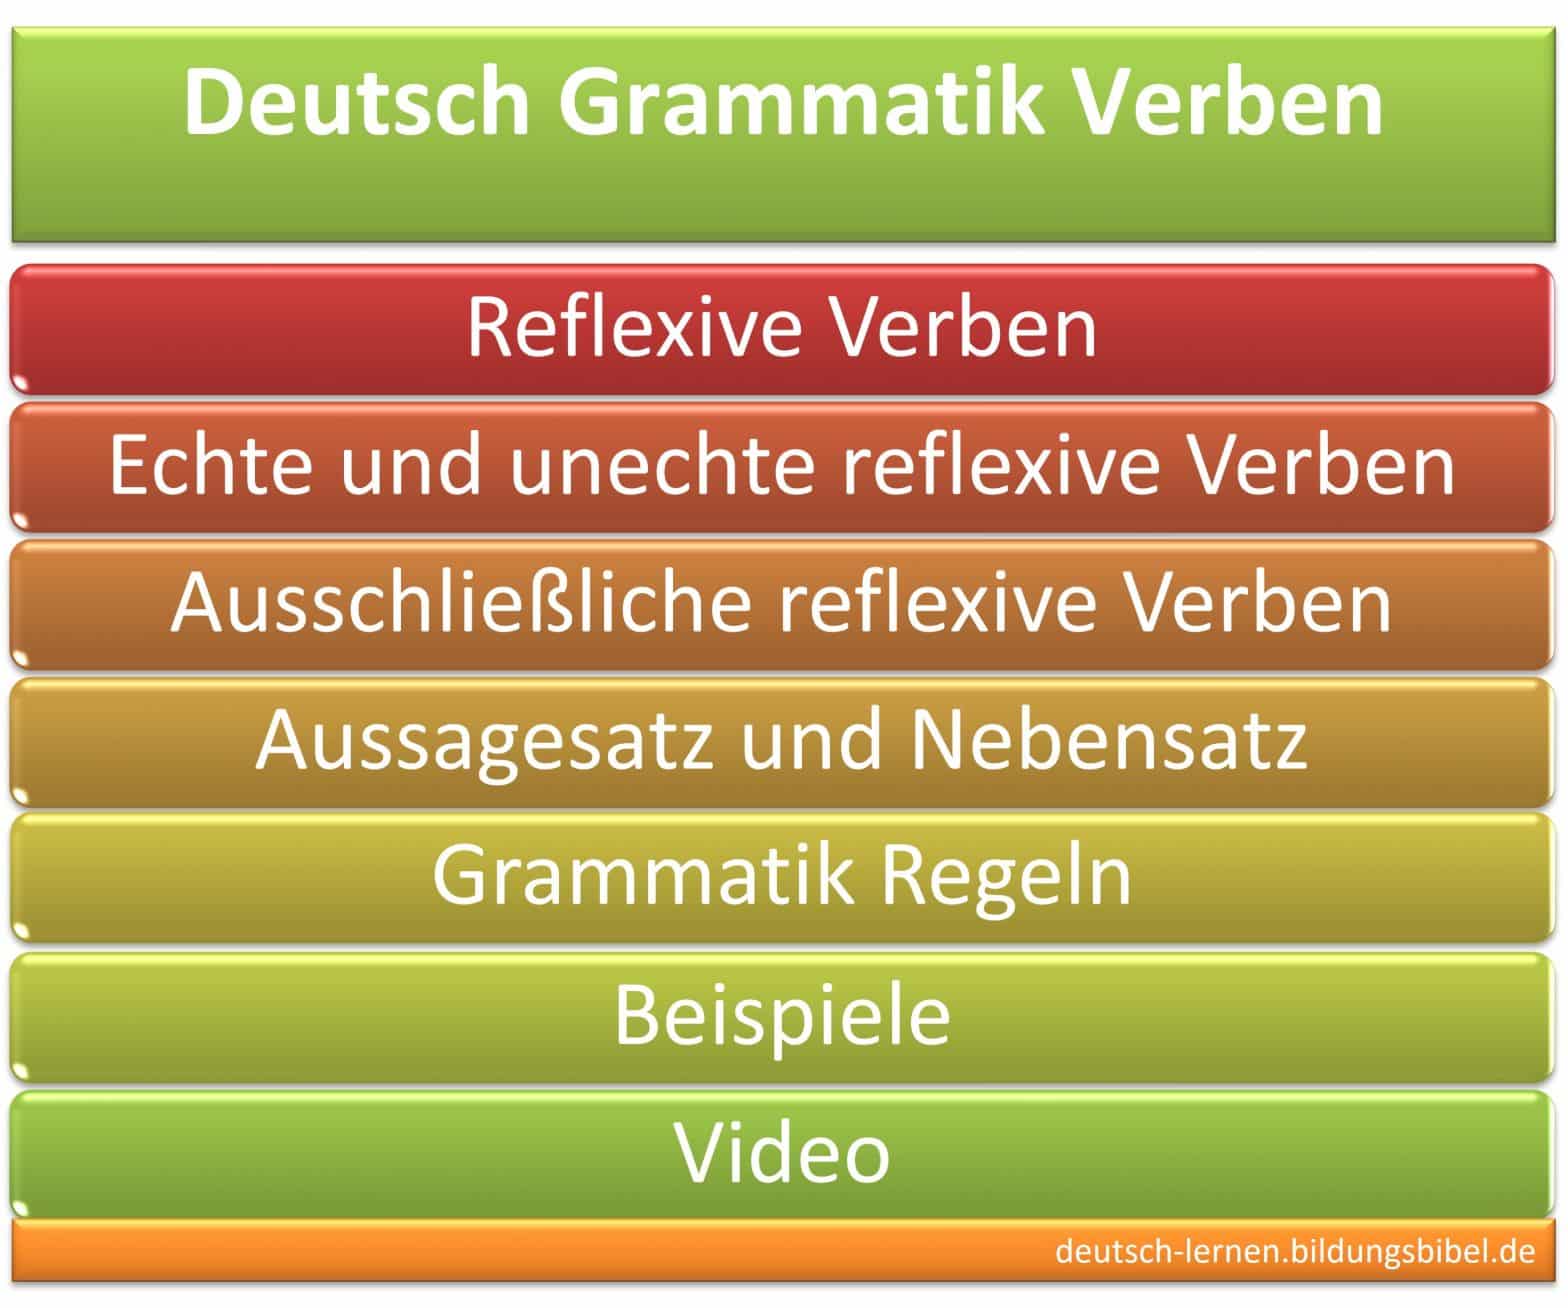 Reflexive Verben, Regeln, Beispiele, Deutsch Grammatik lernen, Video, Reflexivpronomen, echte, unechte und ausschließliche reflexive Verben.